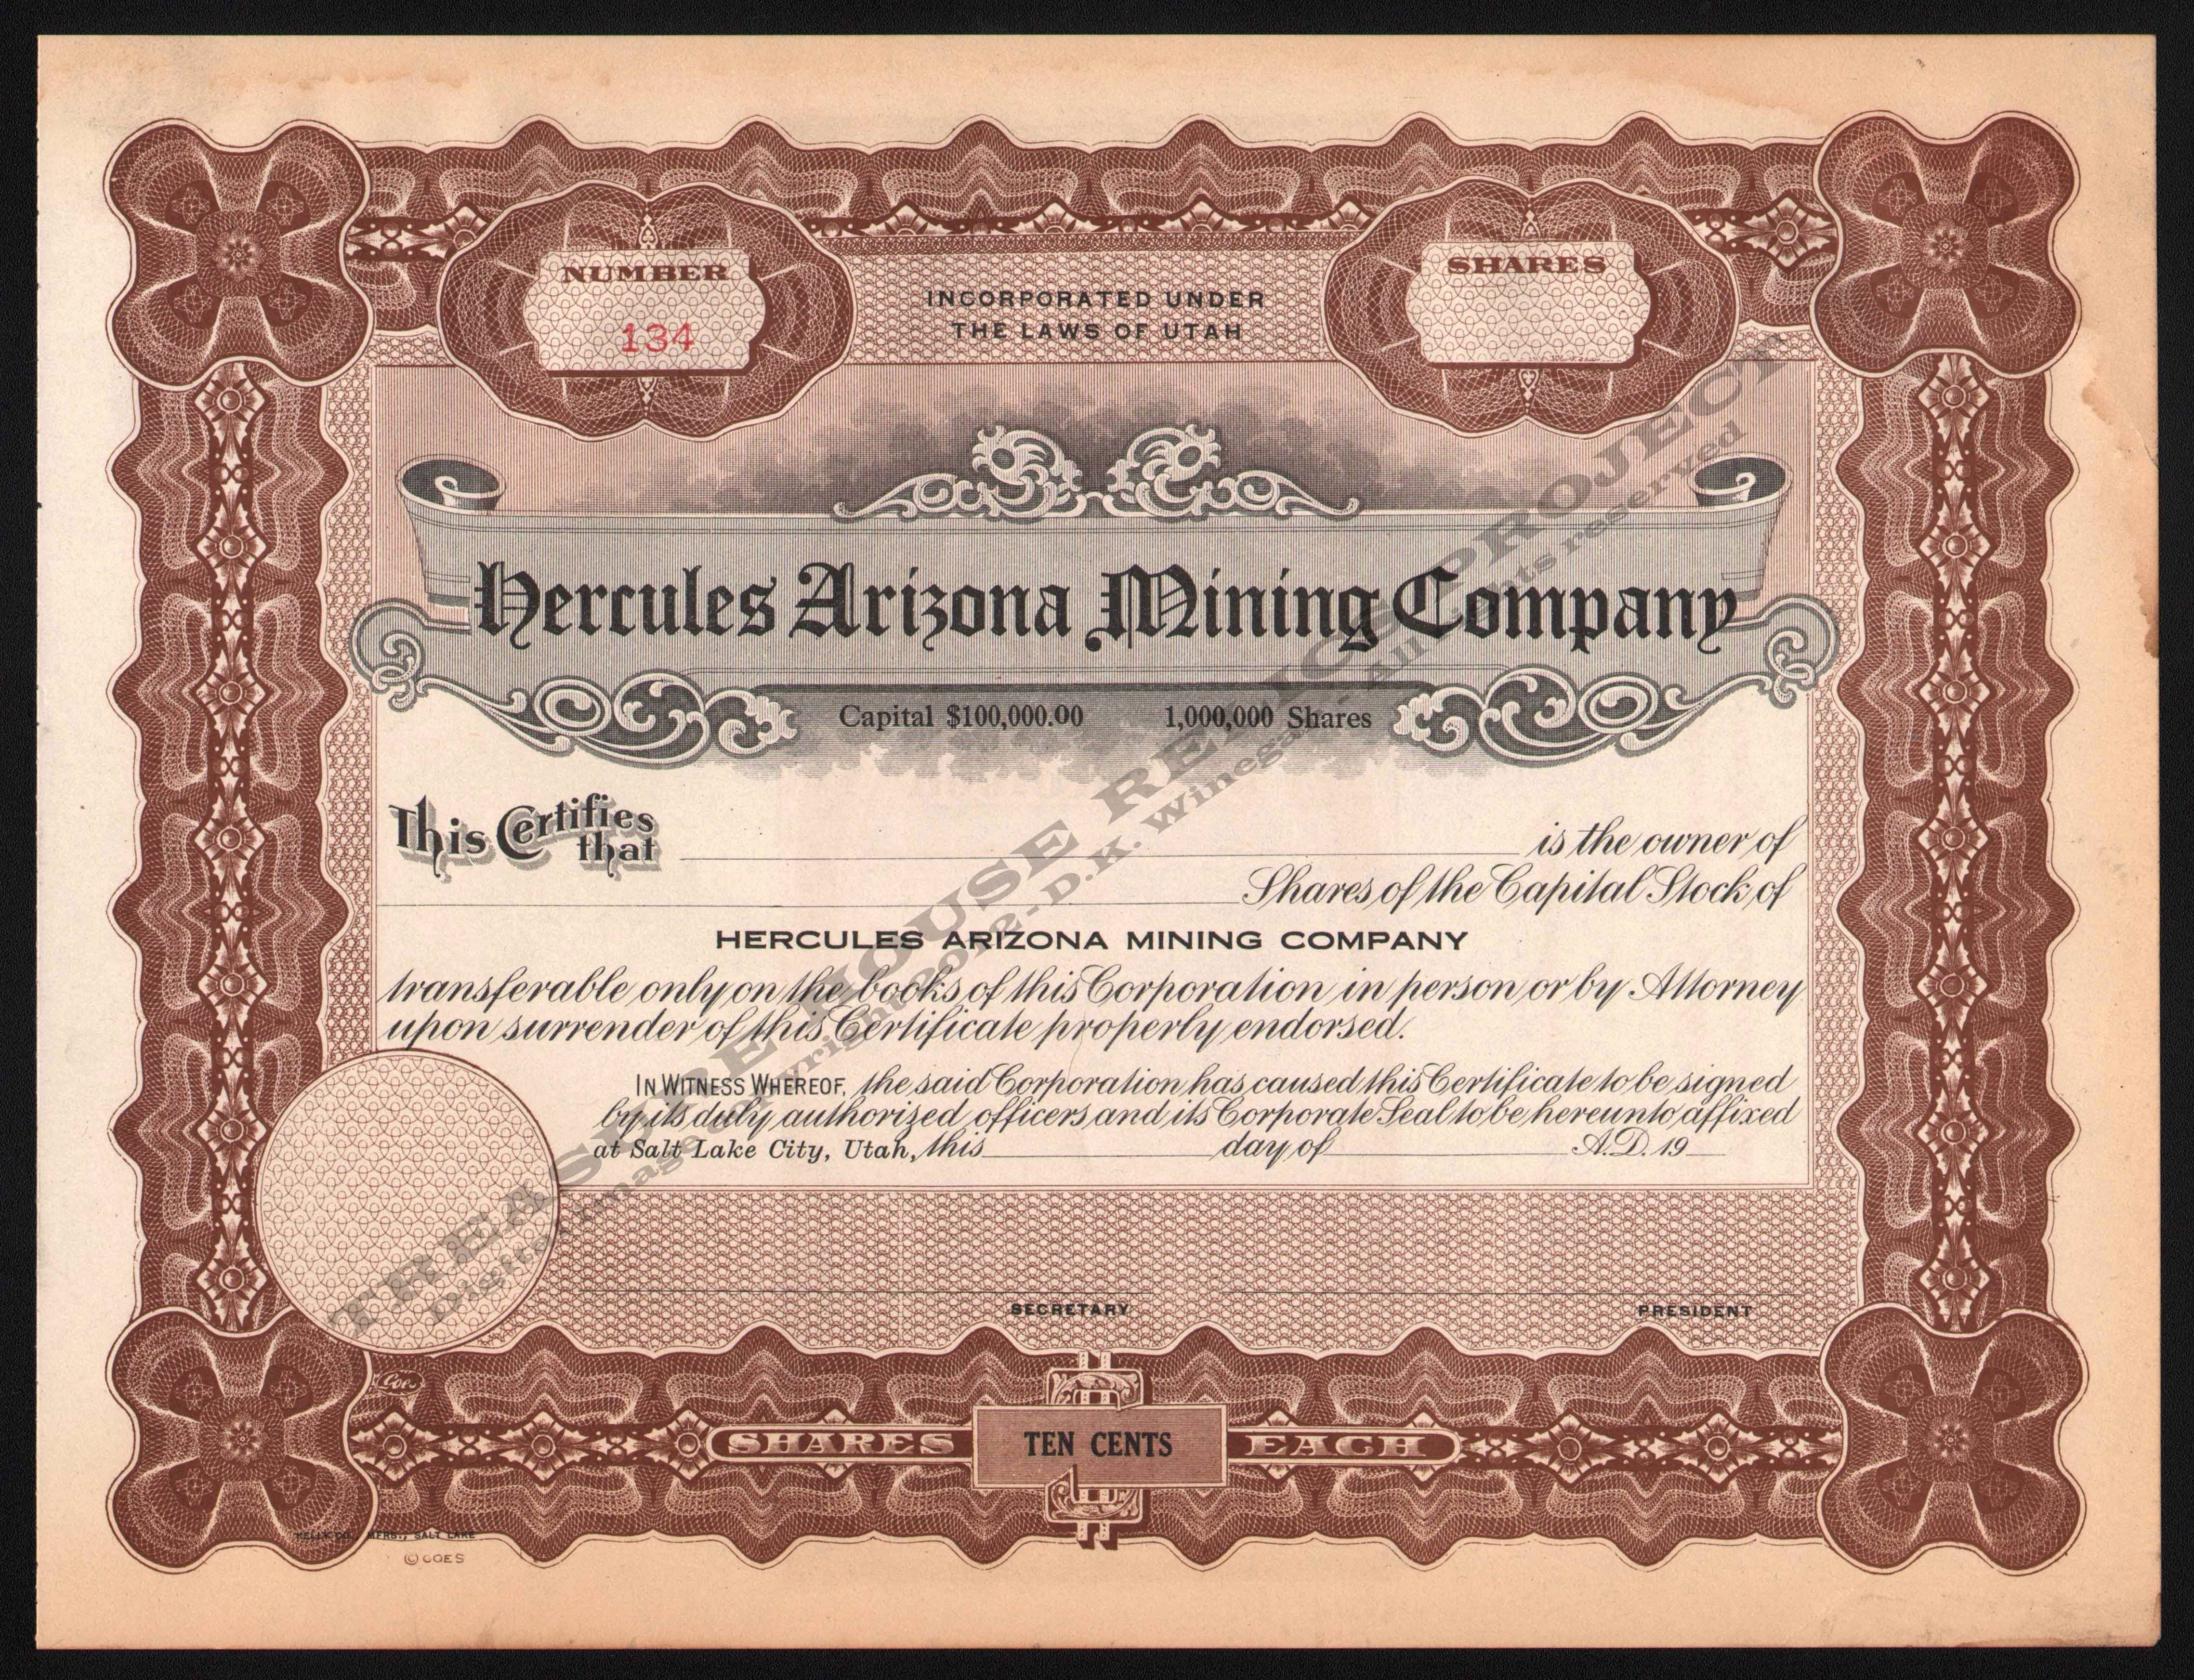 Corporate Bond Certificate Template 11